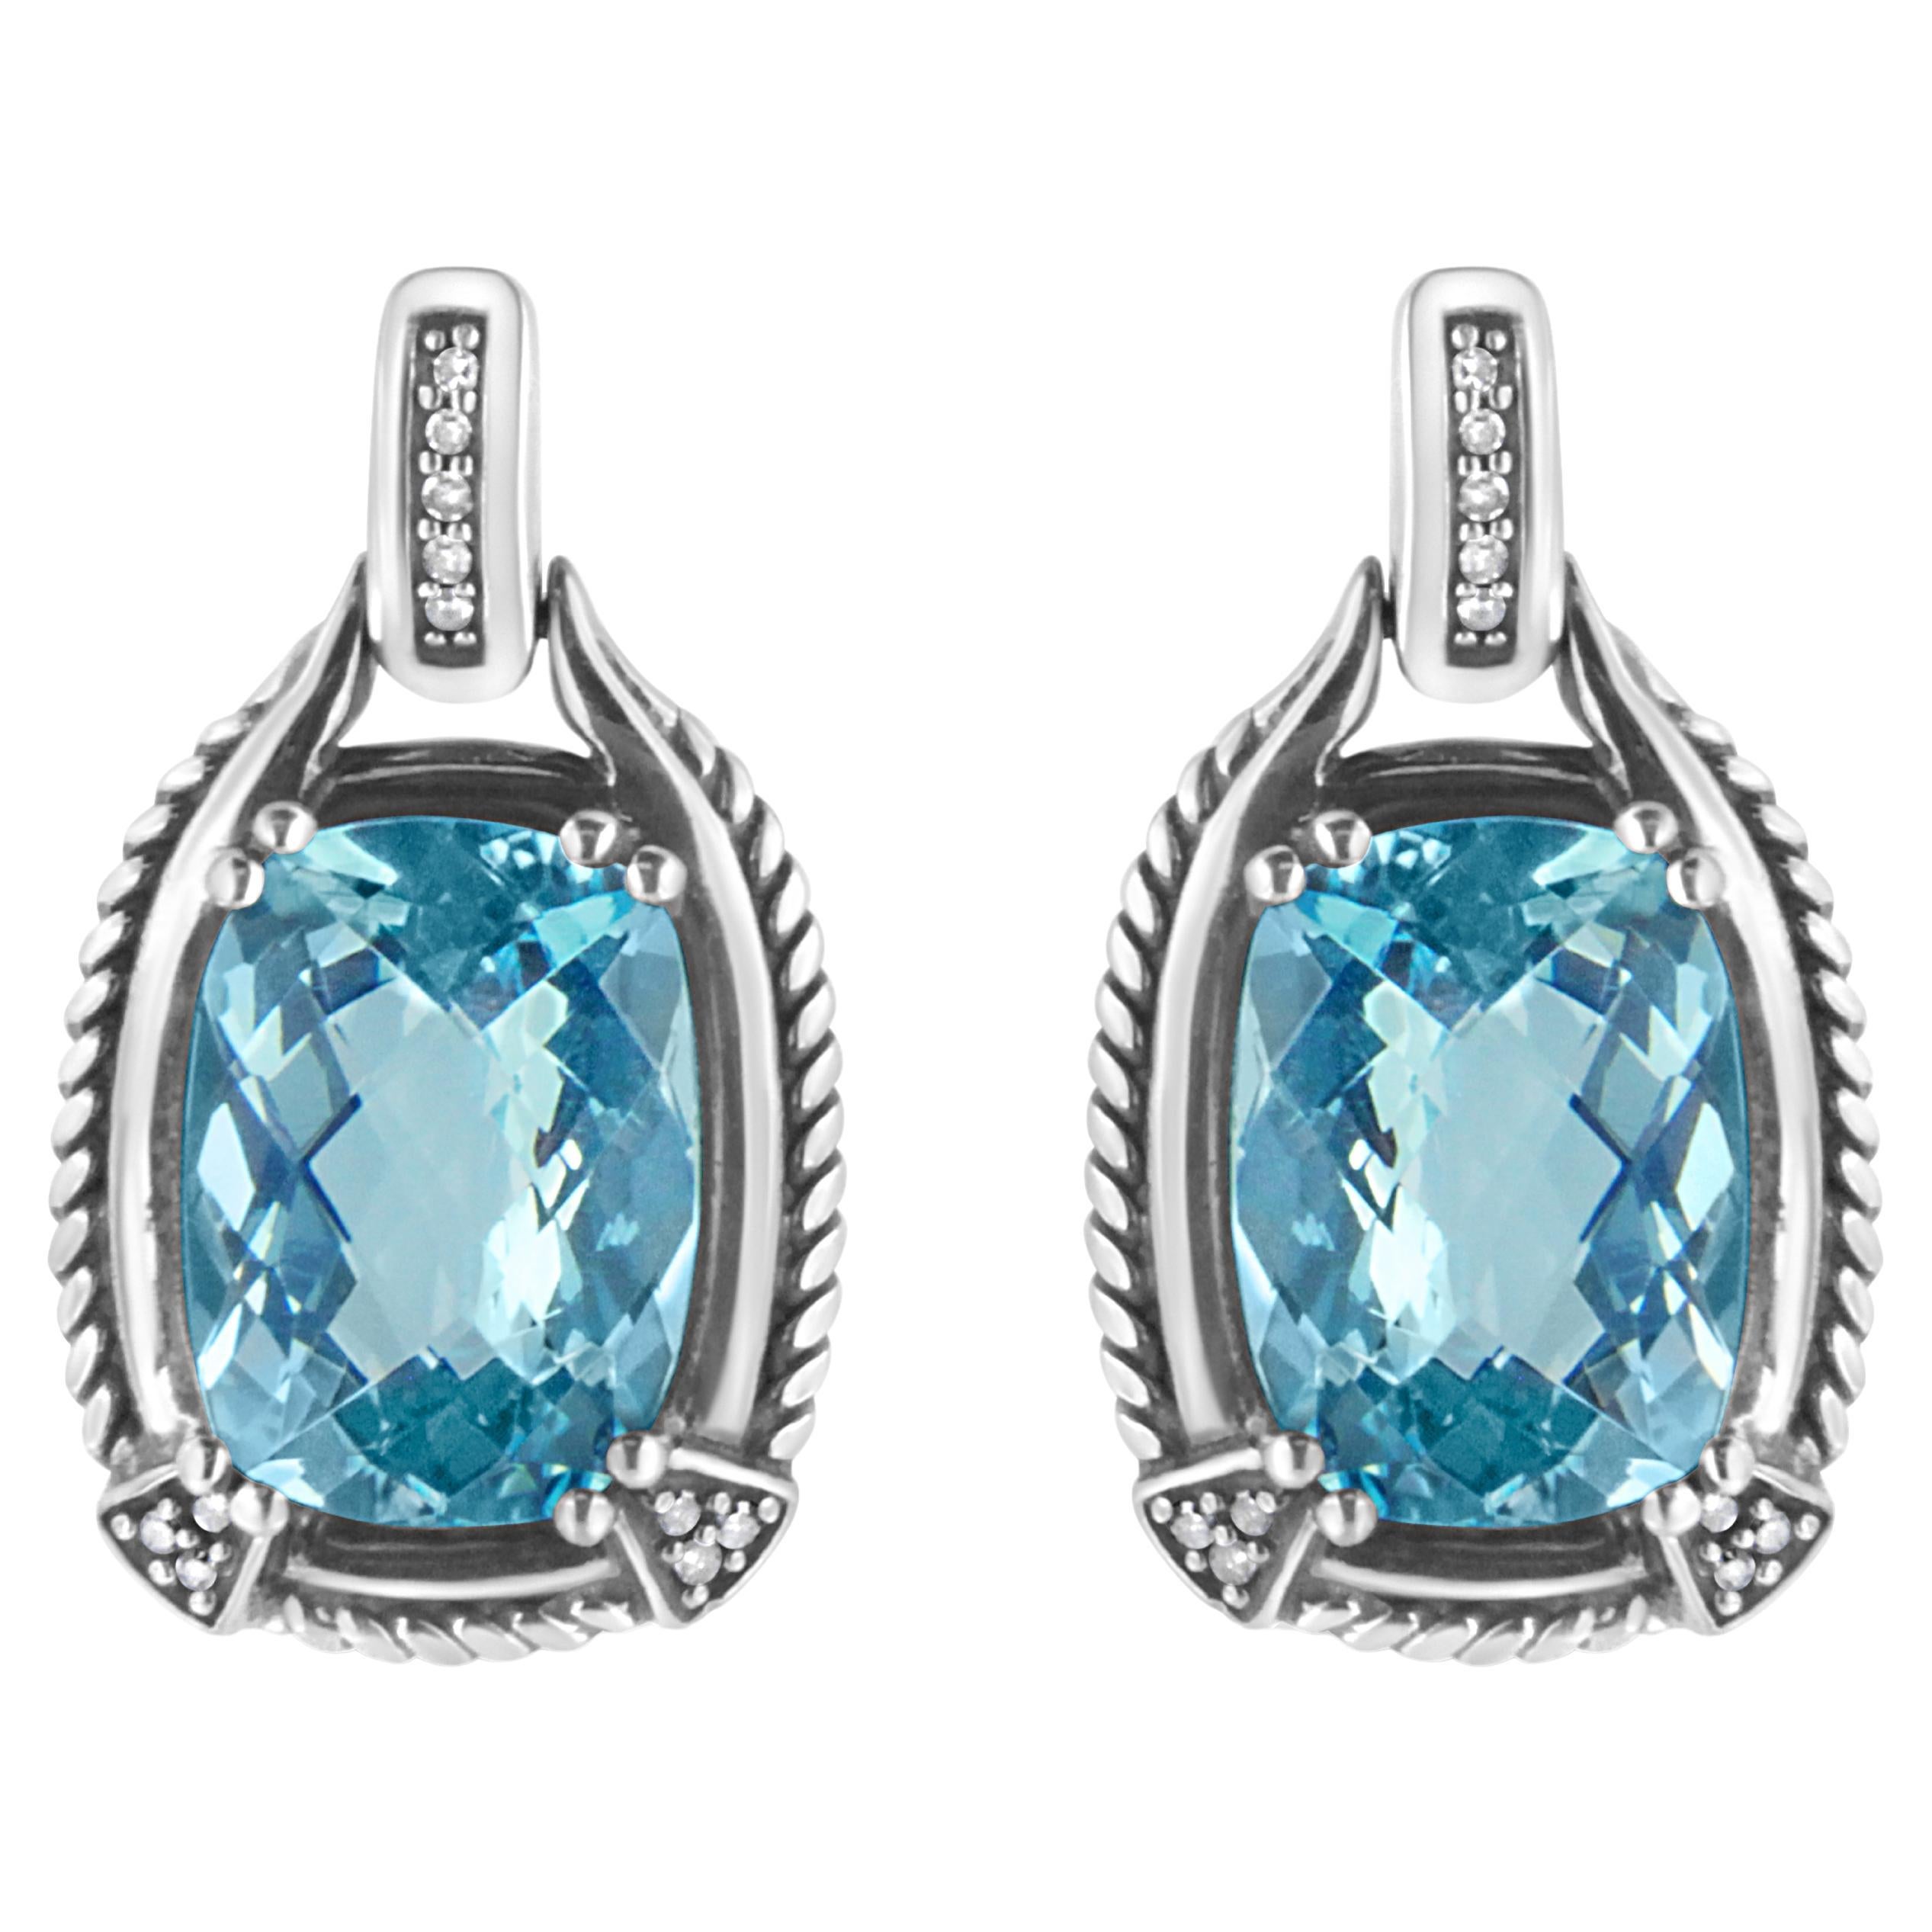 Pendants d'oreilles en argent sterling avec topaze bleue et diamants de 0,925 carat